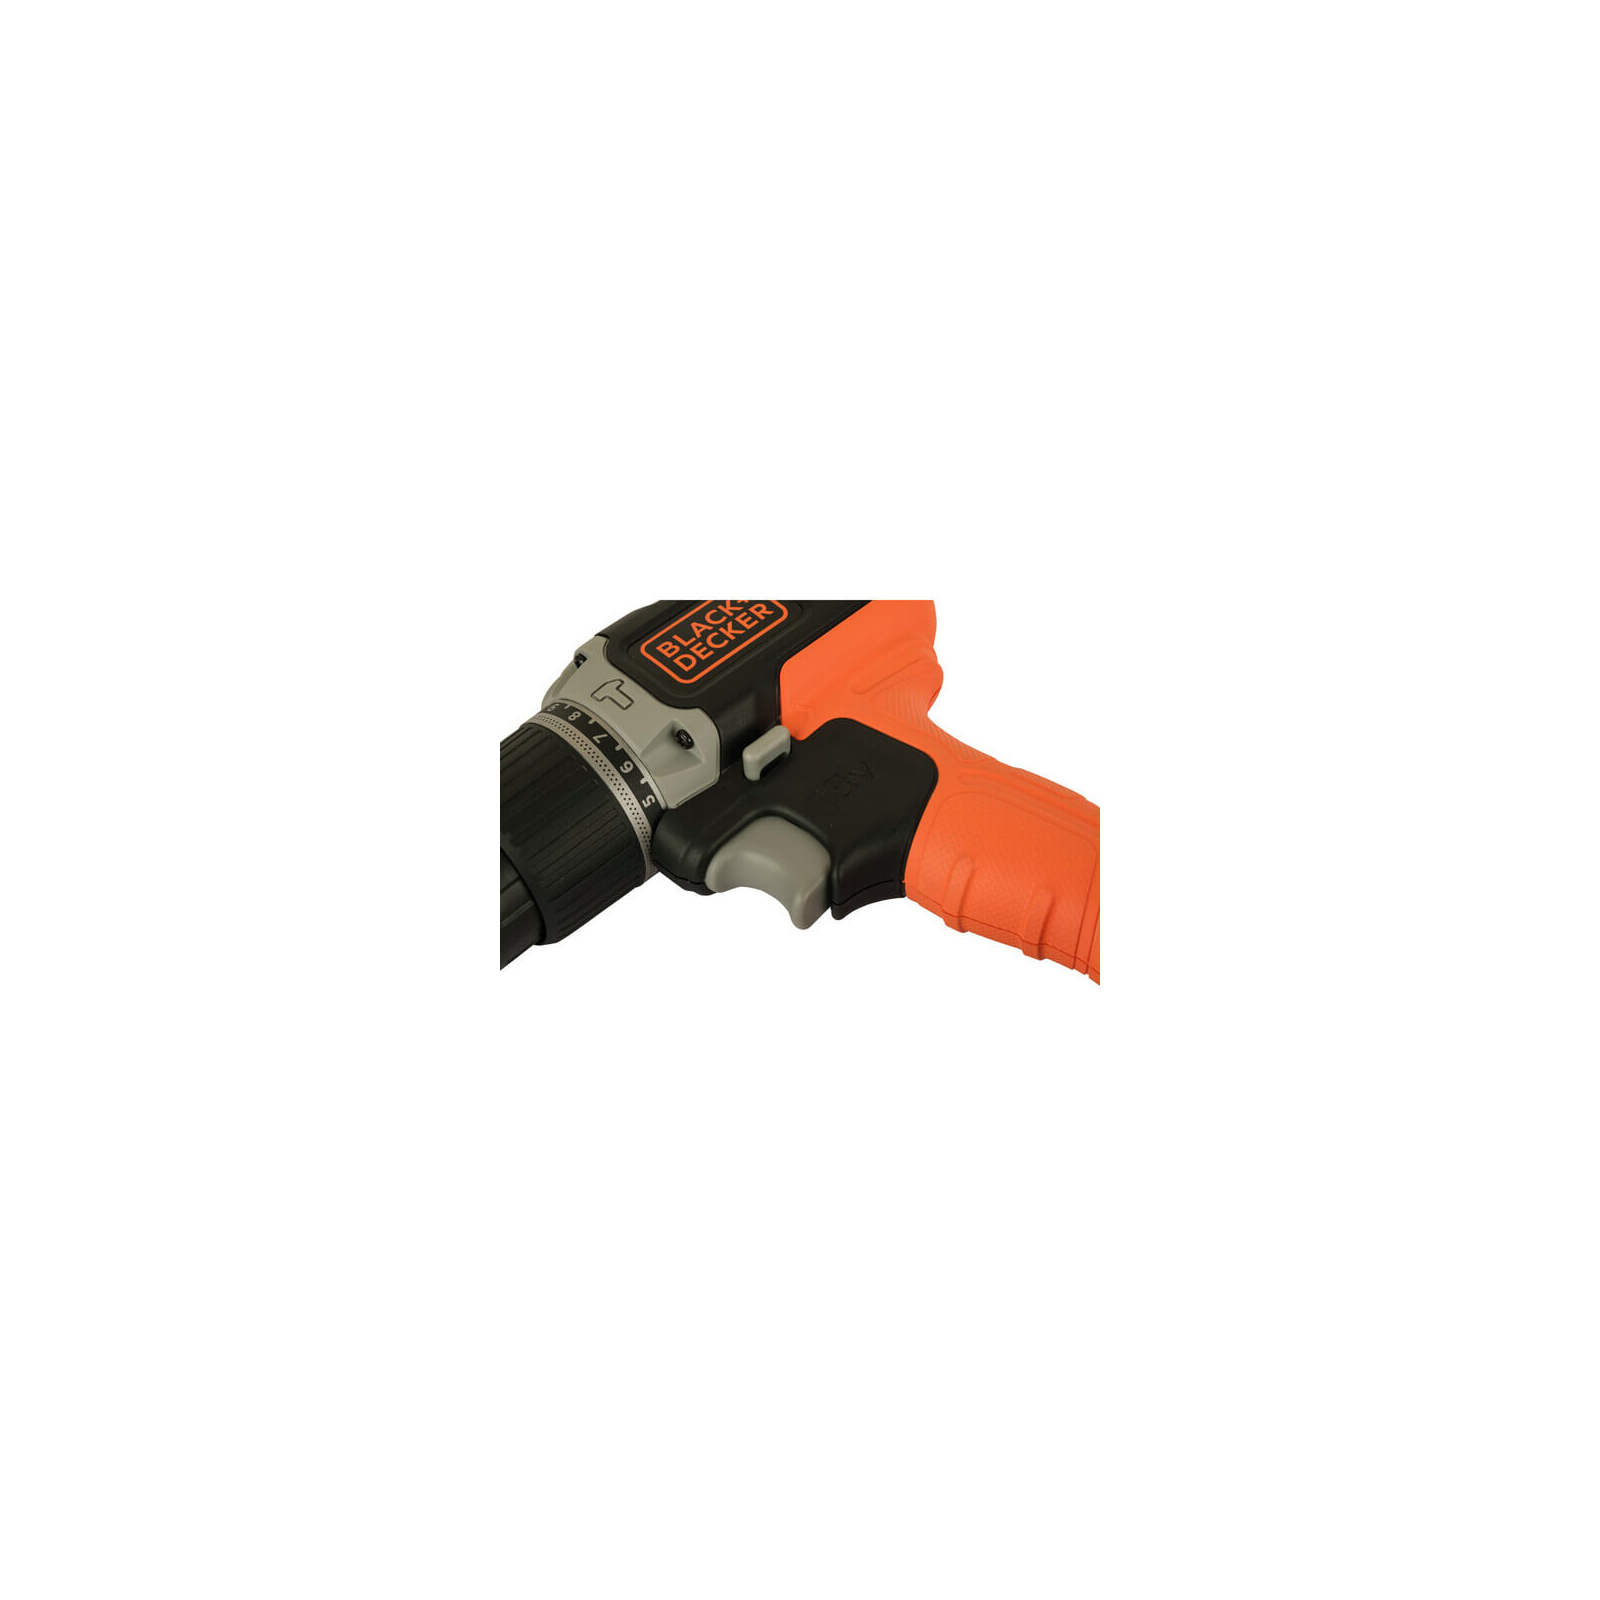 Шуруповерт Black&Decker 18 В, 1.5Ah, 45 Нм,0-360/0-1400 об/мин, 21000 уд/мин, 1.3 кг (BCD003C1) изображение 10